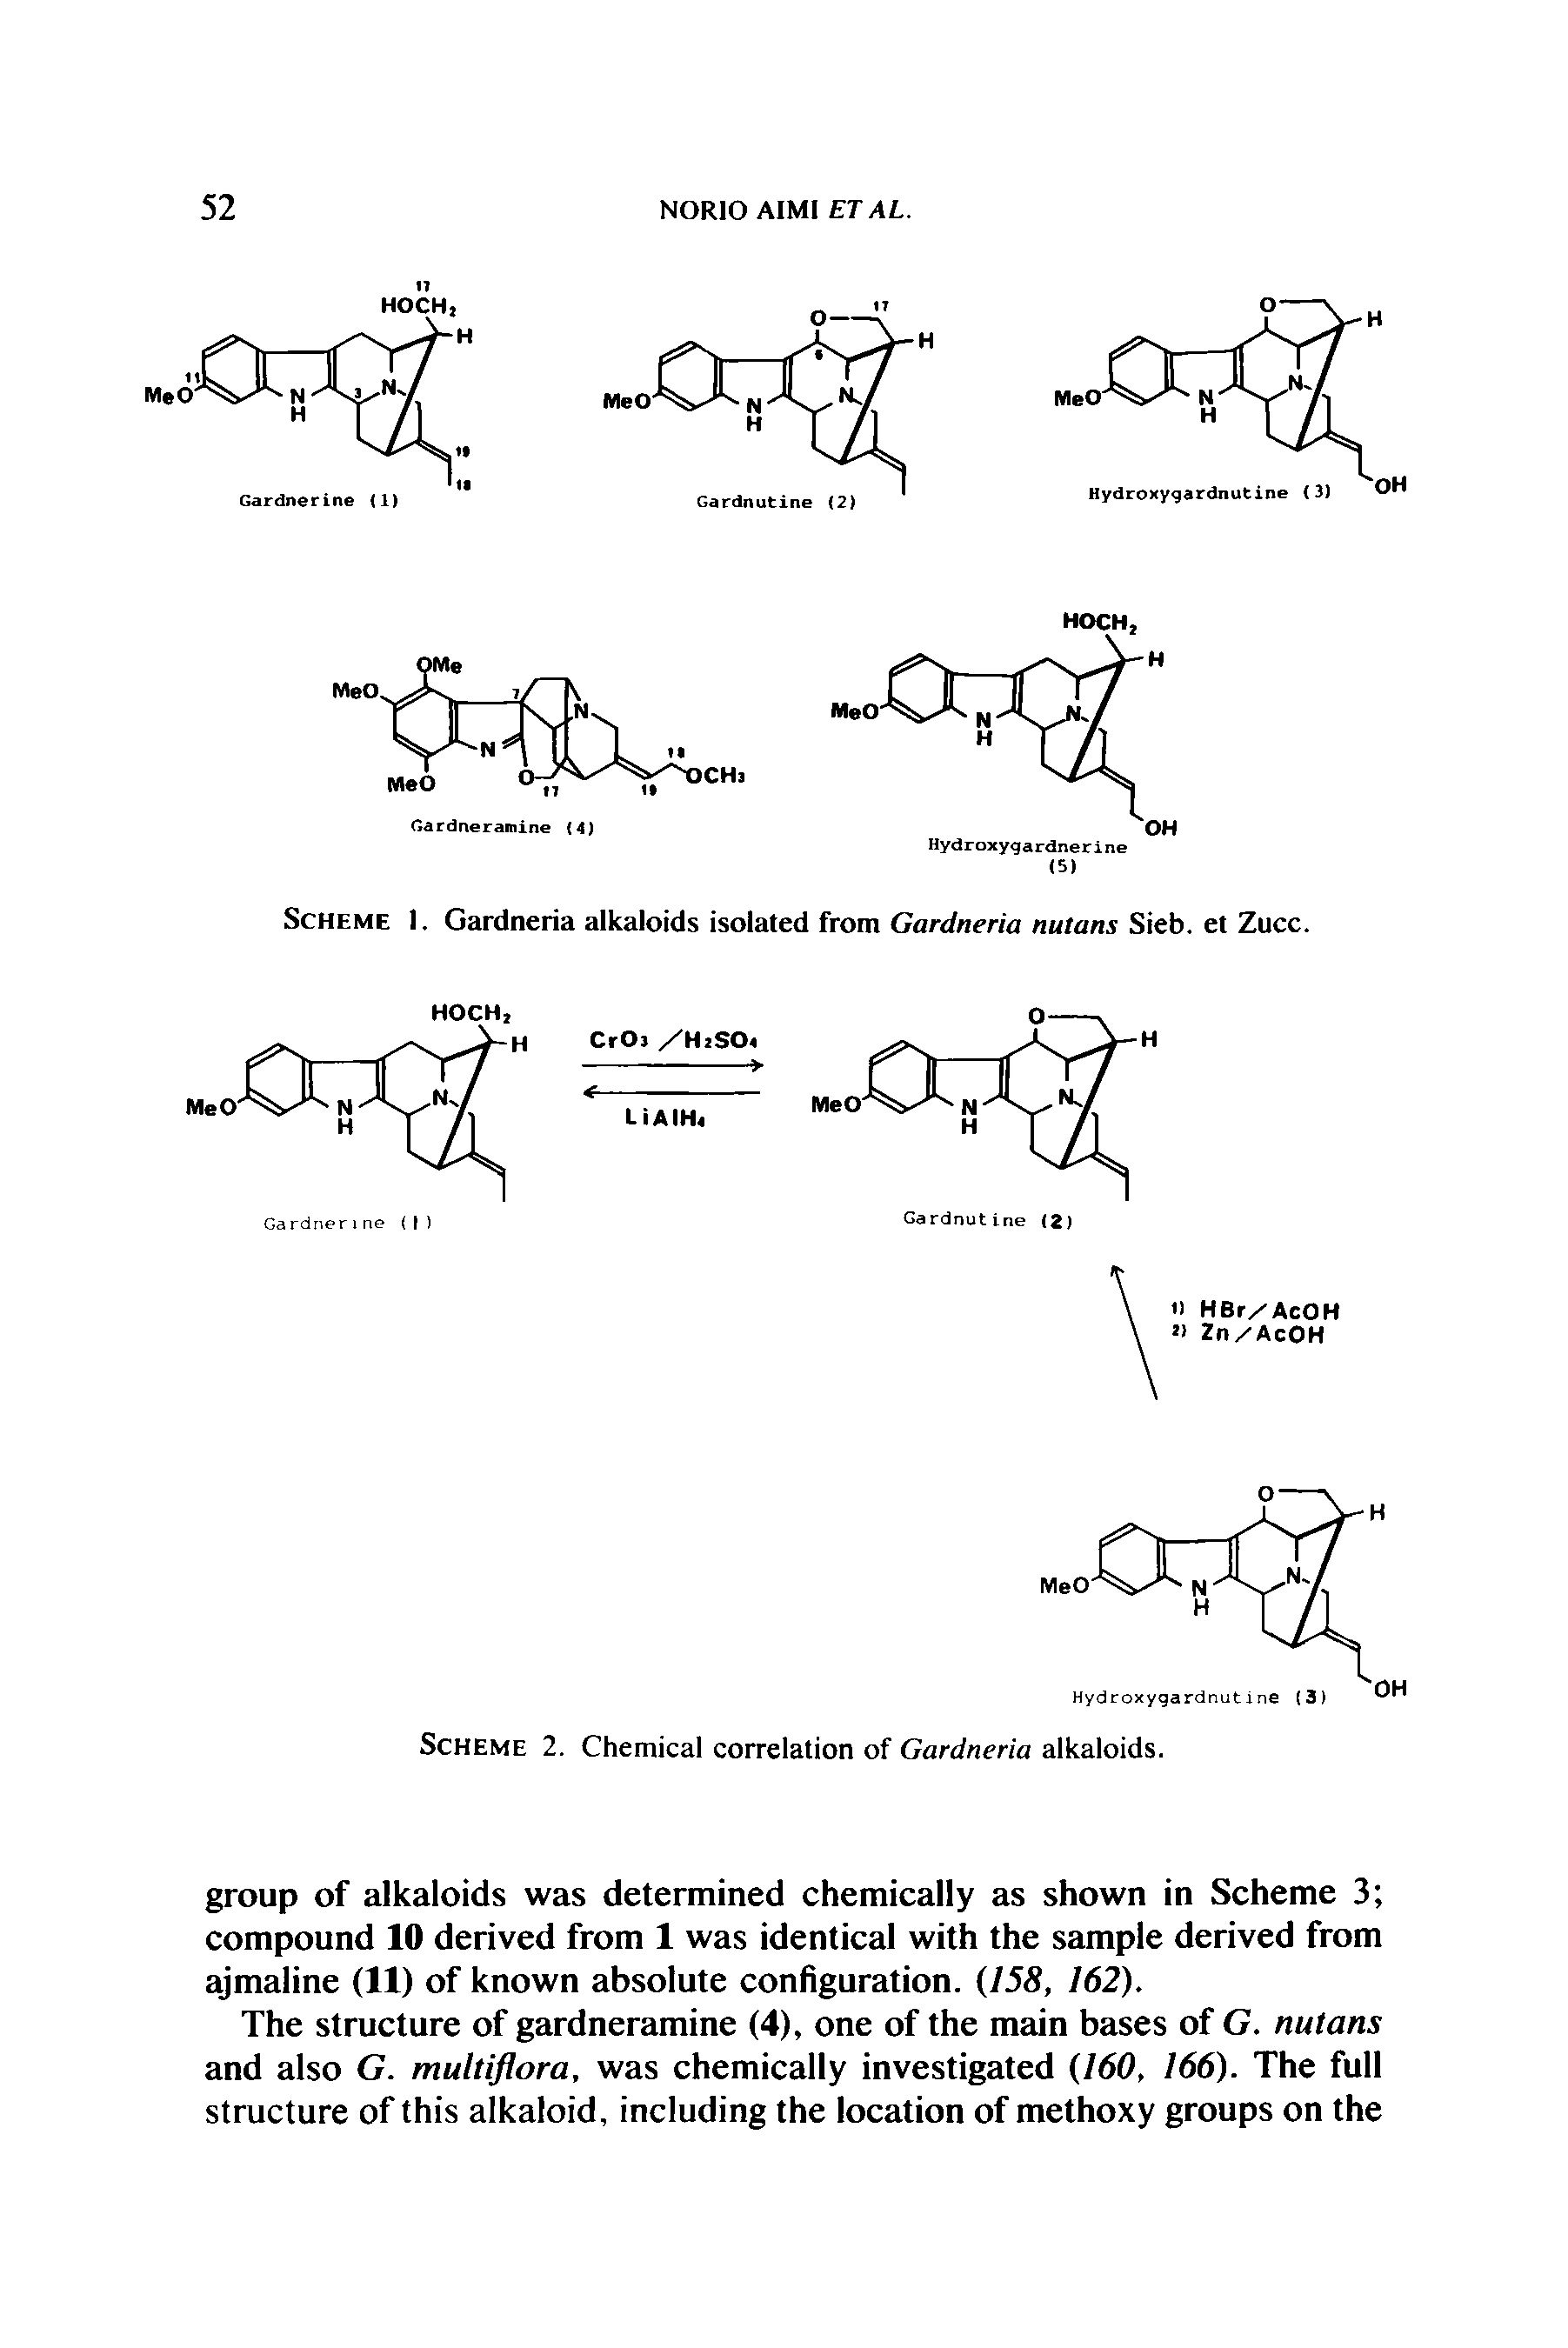 Scheme I. Gardneria alkaloids isolated from Gardneria nutans Sieb. et Zucc.